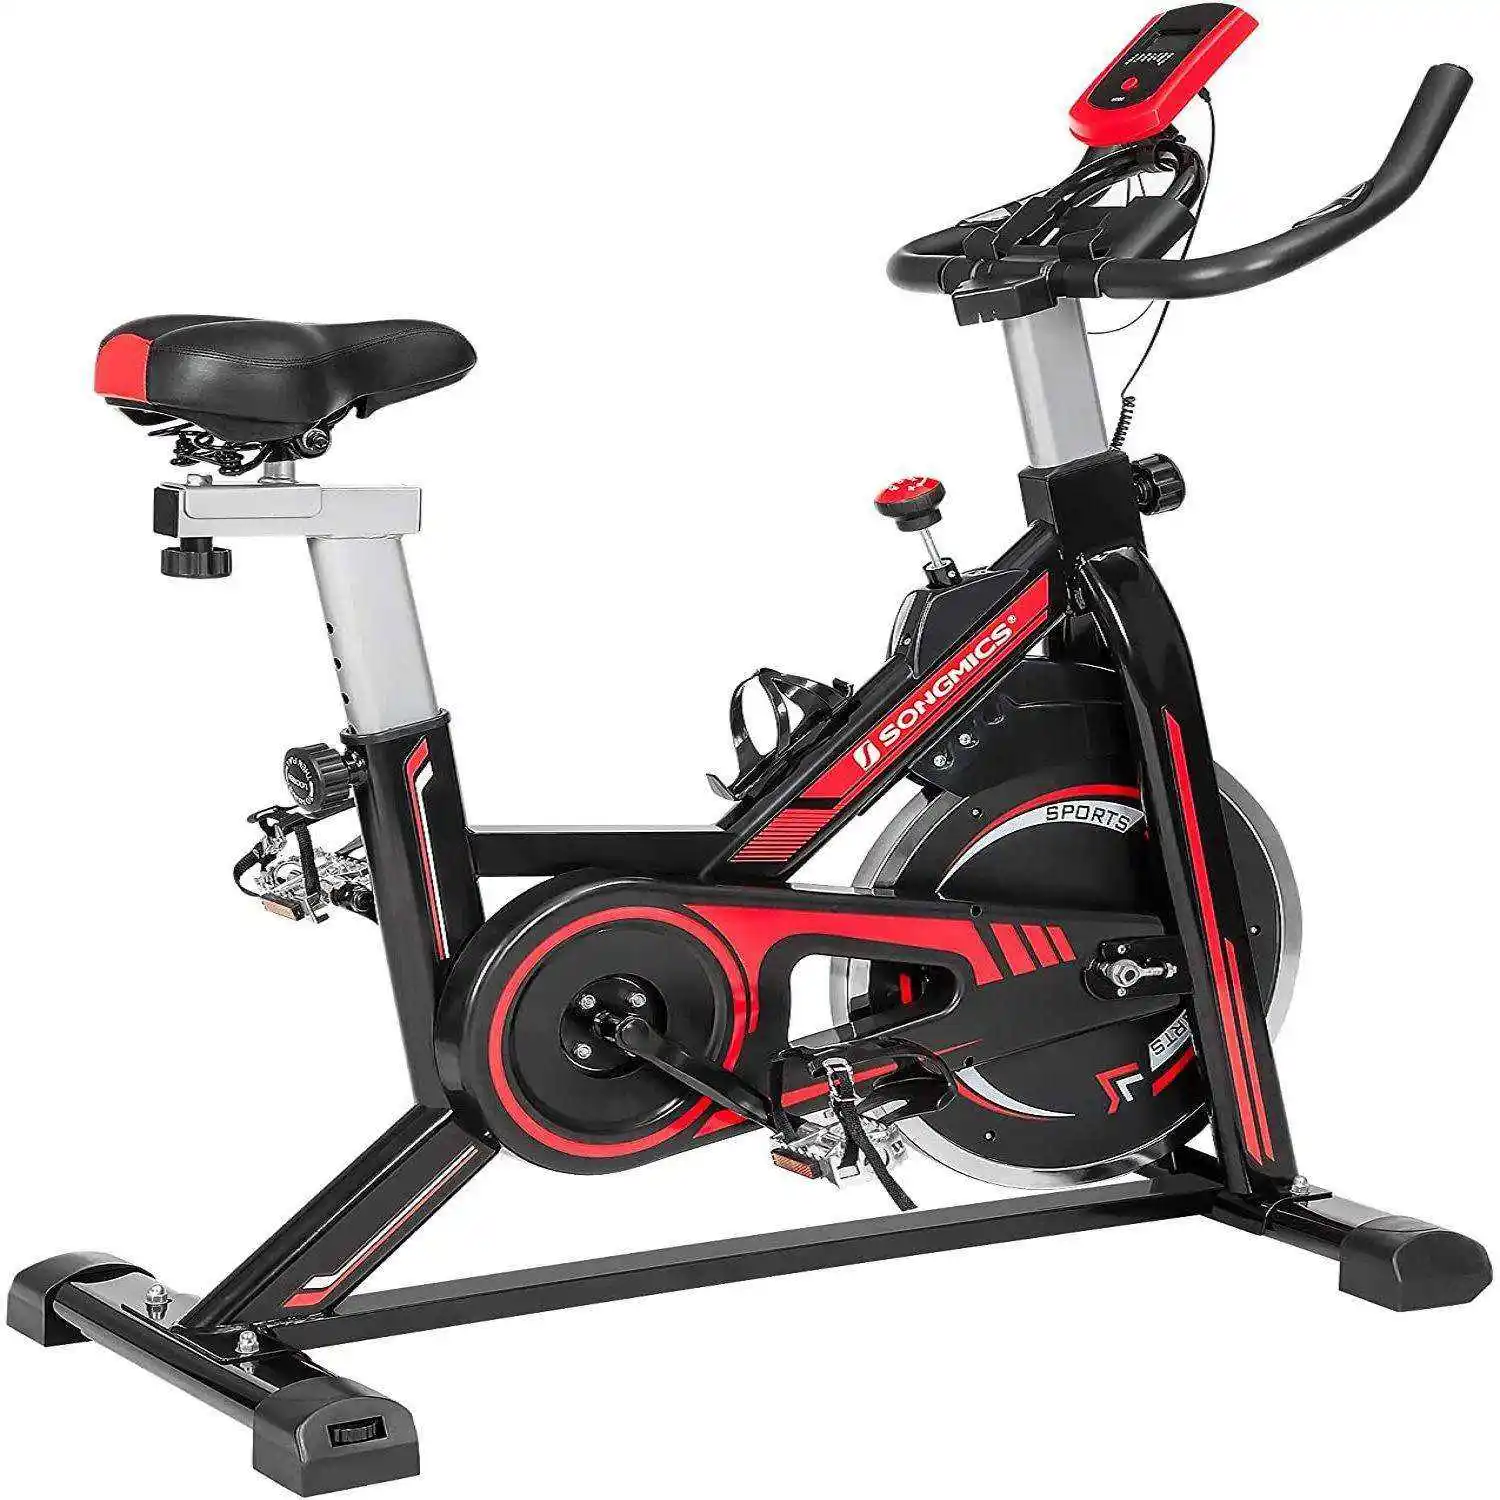 Bicicleta estática superventas Spinning Control magnético Cardio Training Stationary Spinning Bike